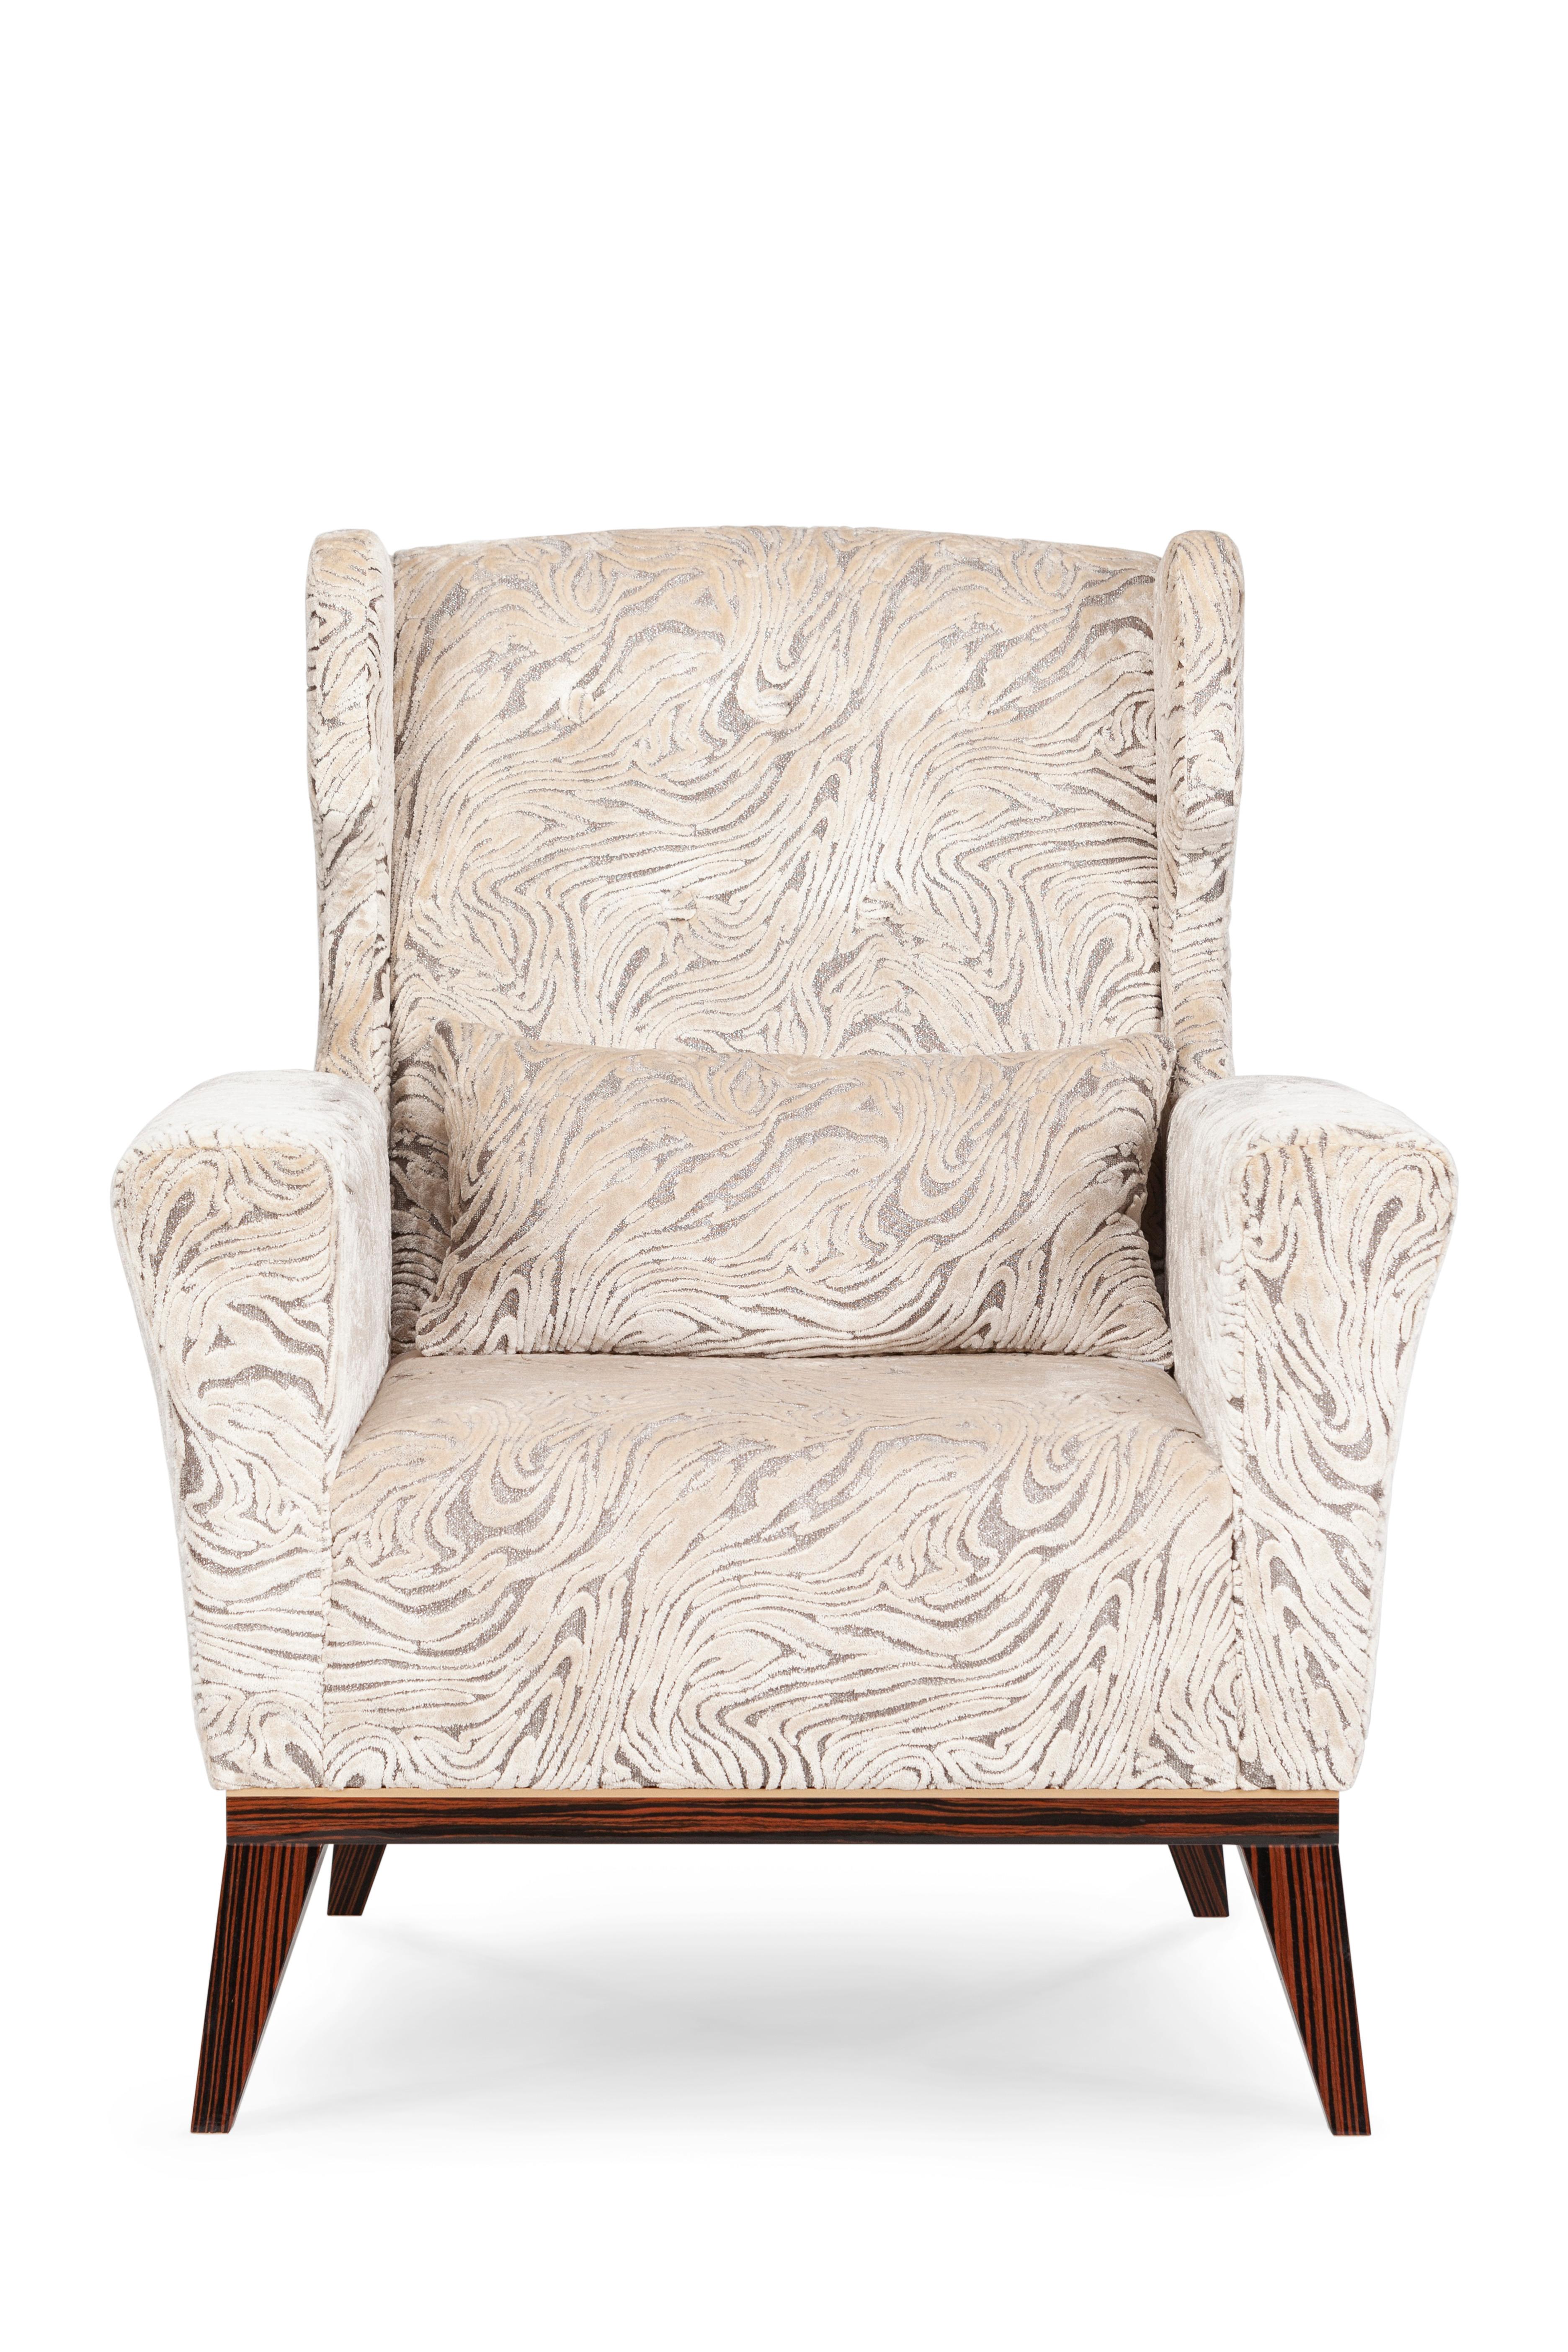 Genebra Sessel, Modern Collection'S, handgefertigt in Portugal - Europa von GF Modern.

Der Genebra-Sessel wurde entworfen, um Ihrem Wohnzimmer einen raffinierten Vintage-Look zu verleihen. Mit beigefarbenem, jacquardgemustertem Samt gepolstert und